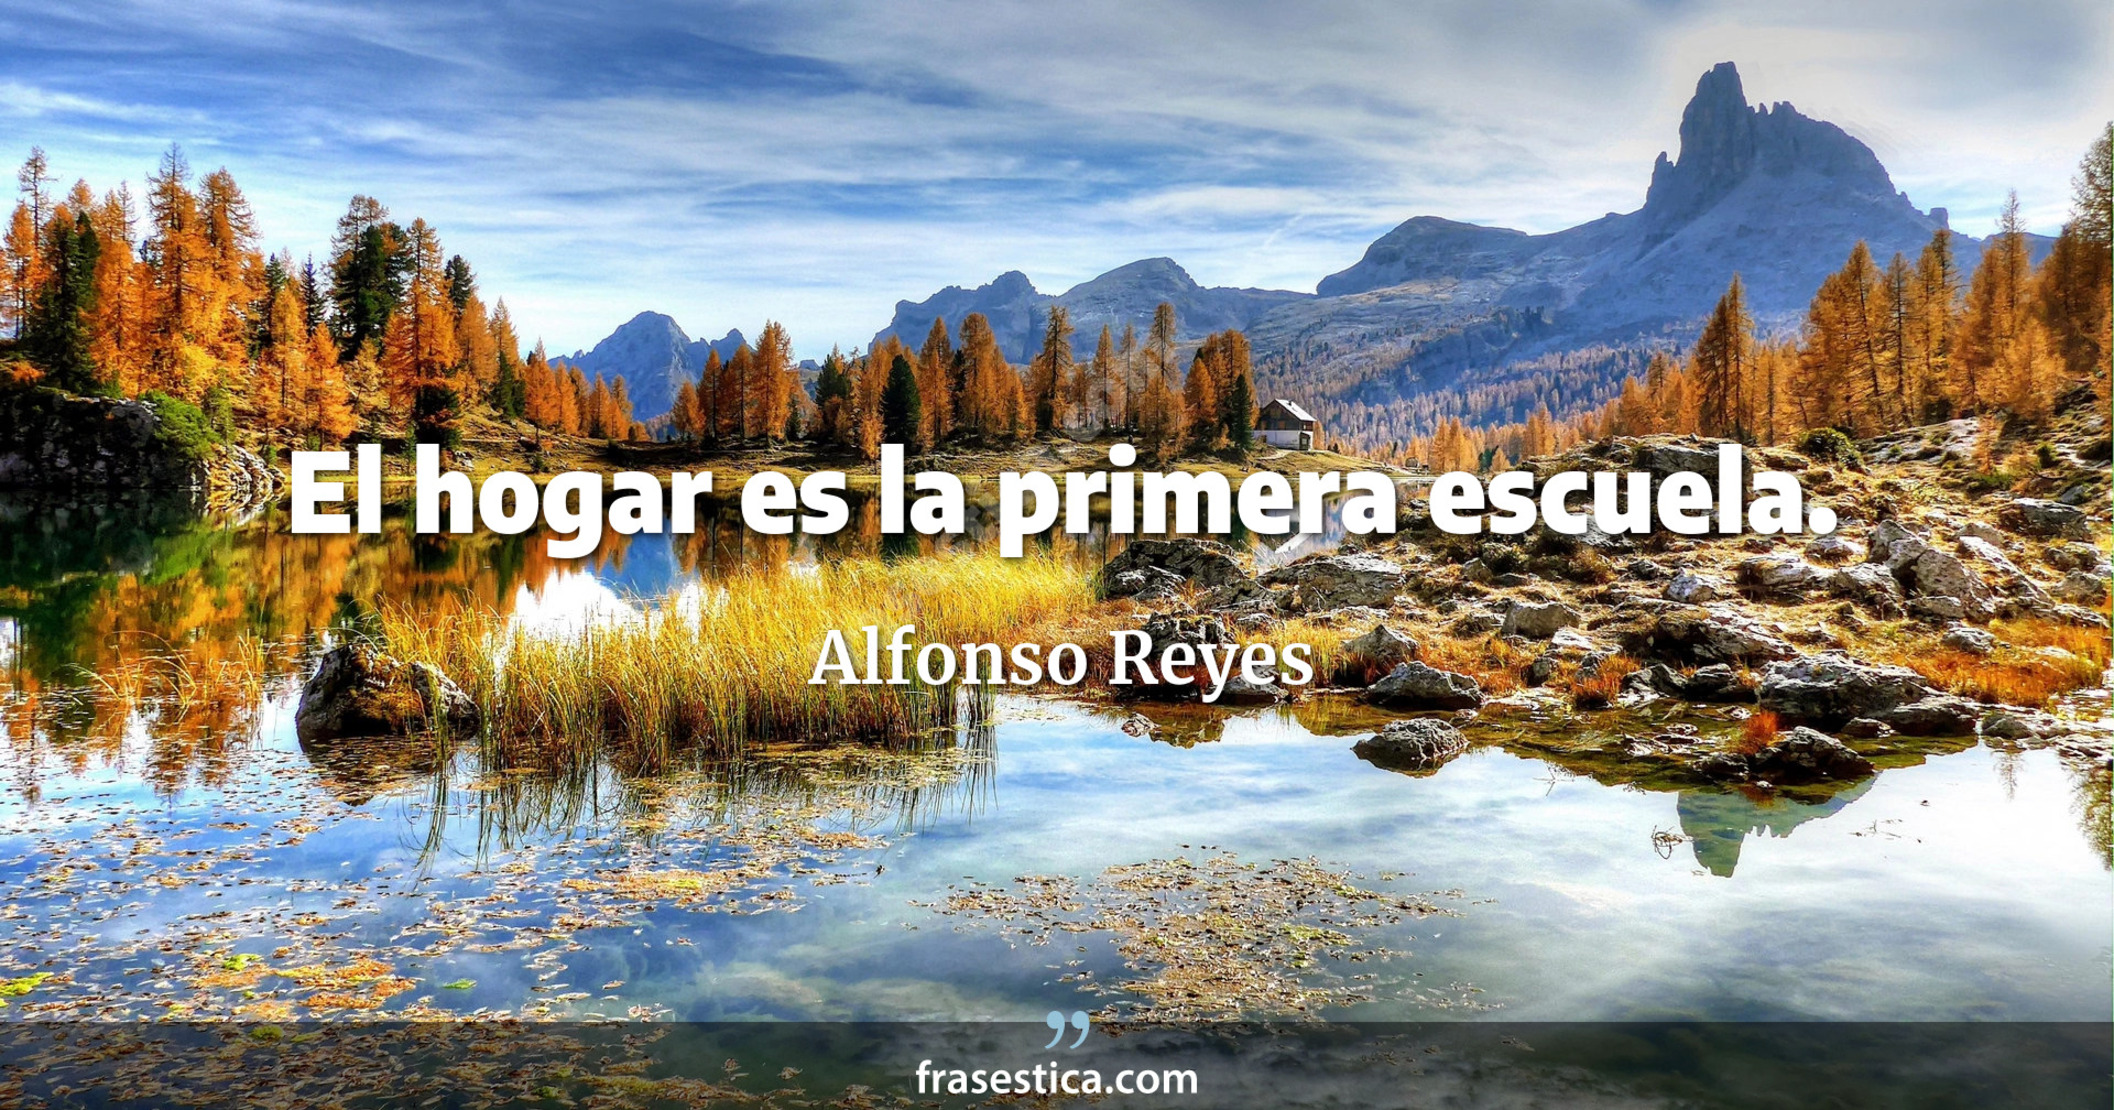 El hogar es la primera escuela. - Alfonso Reyes